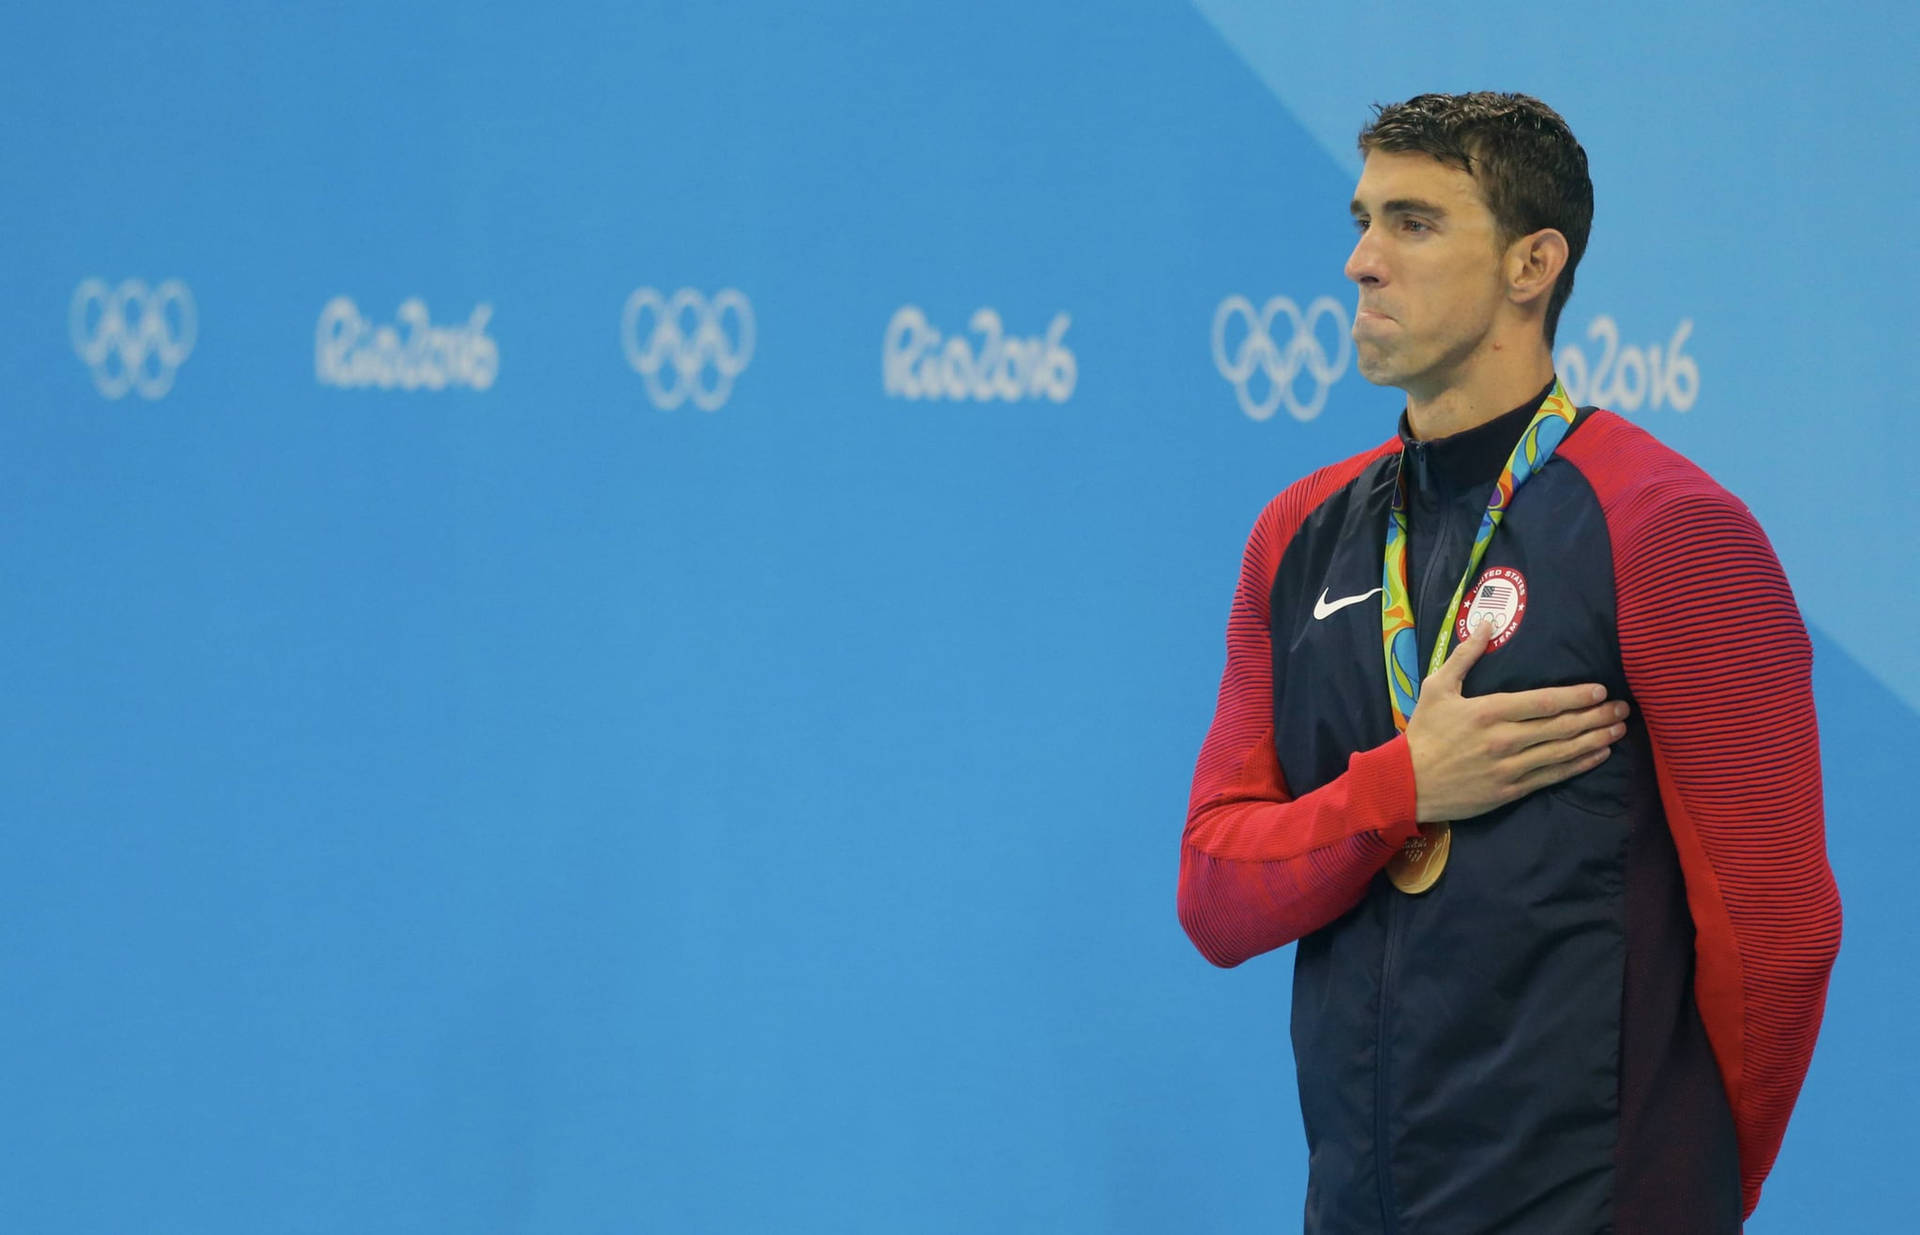 Michael Phelps Rio 2016 løbebane. Wallpaper